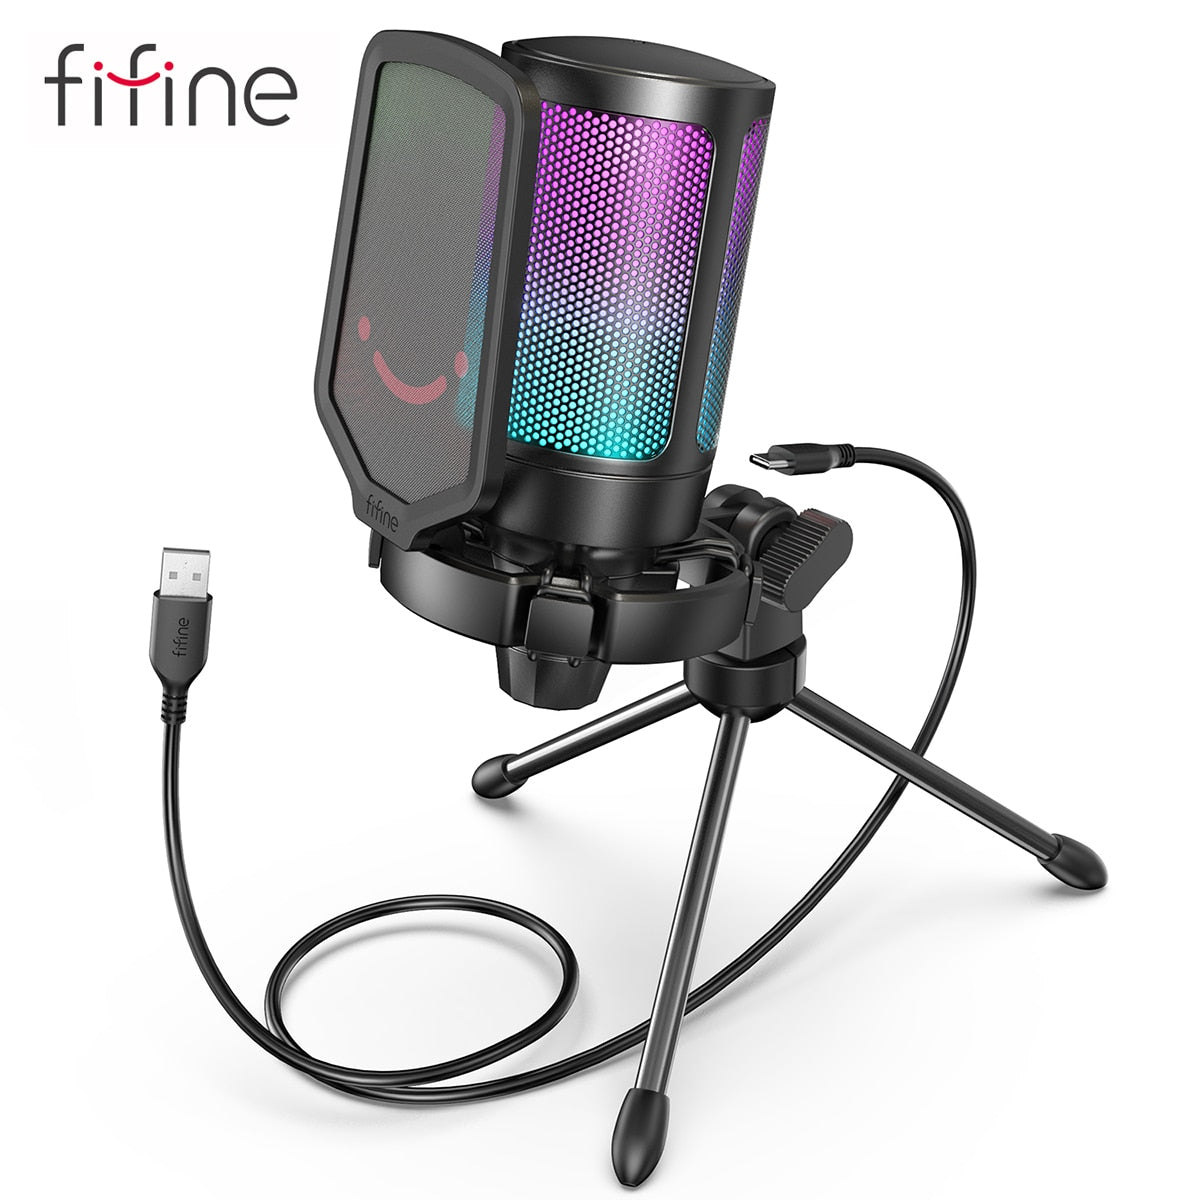 Fifine AMPLIGAME AM8 RGB USB/XLR Microphone - Dynamic Mic - Pink